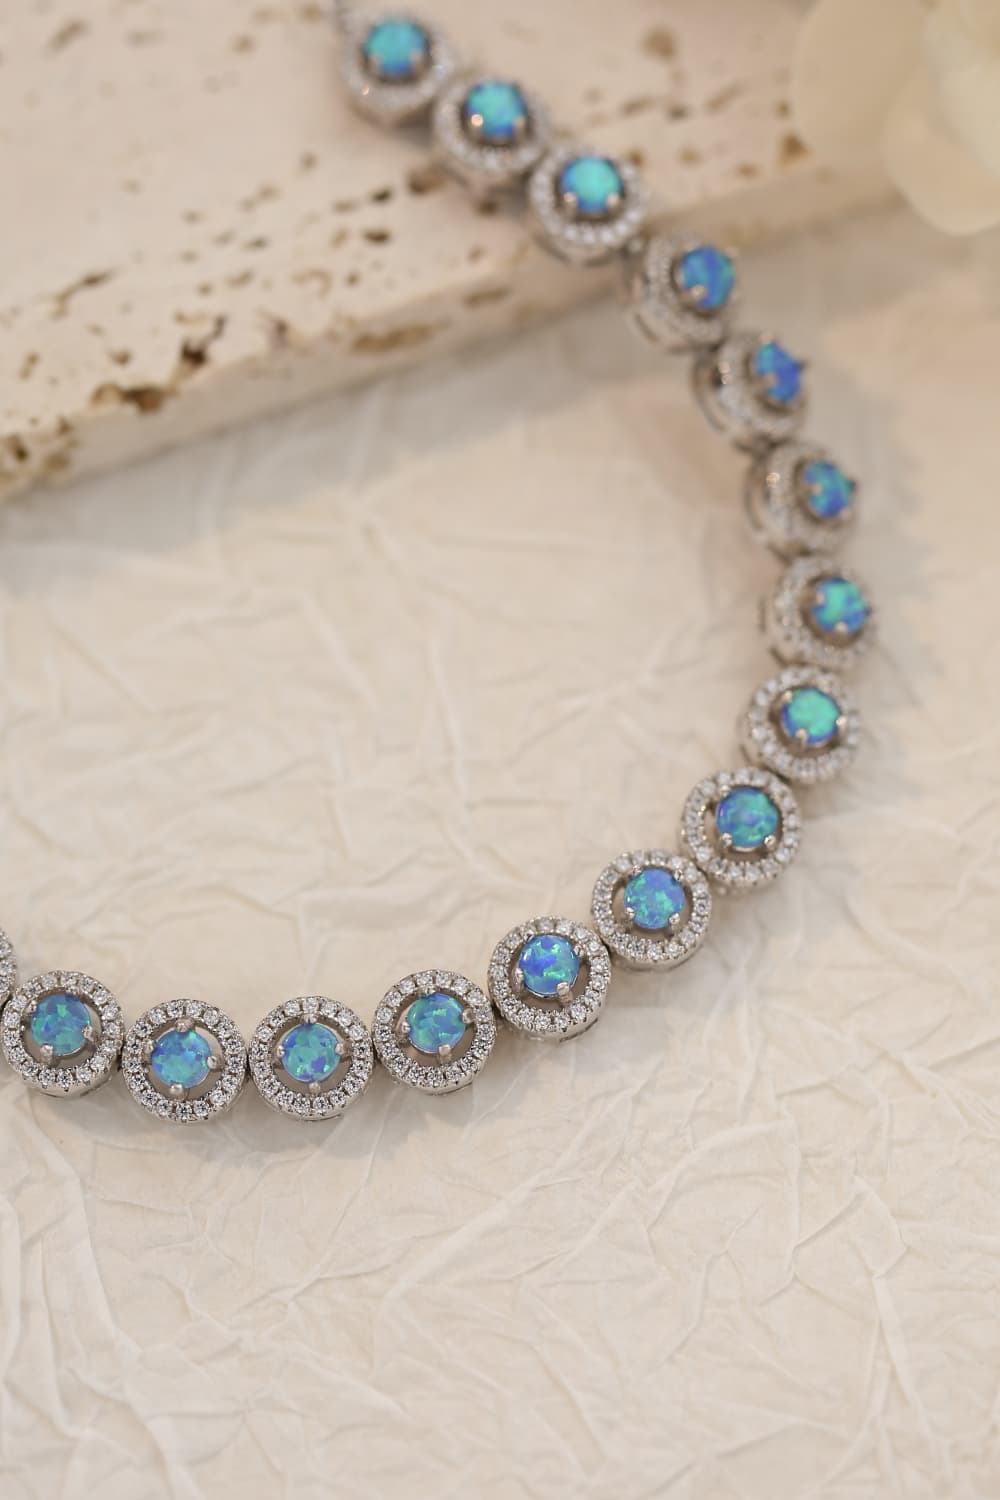 My Own Way Opal Bracelet - Women’s Jewelry - Bracelets - 4 - 2024